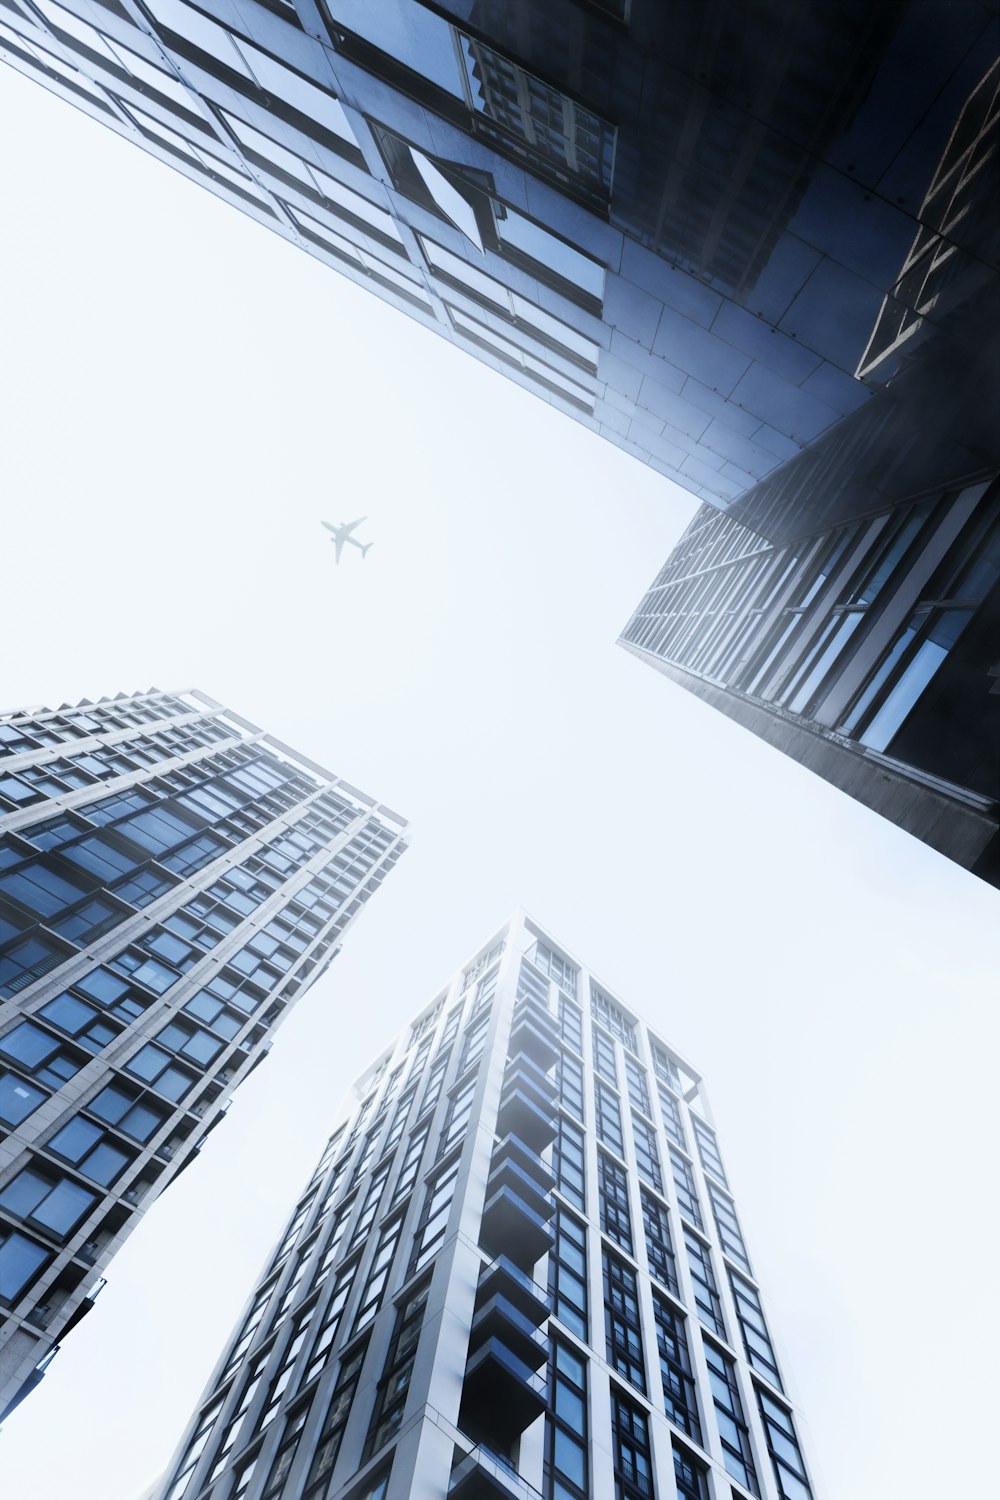 um grupo de edifícios altos com um avião voando no céu